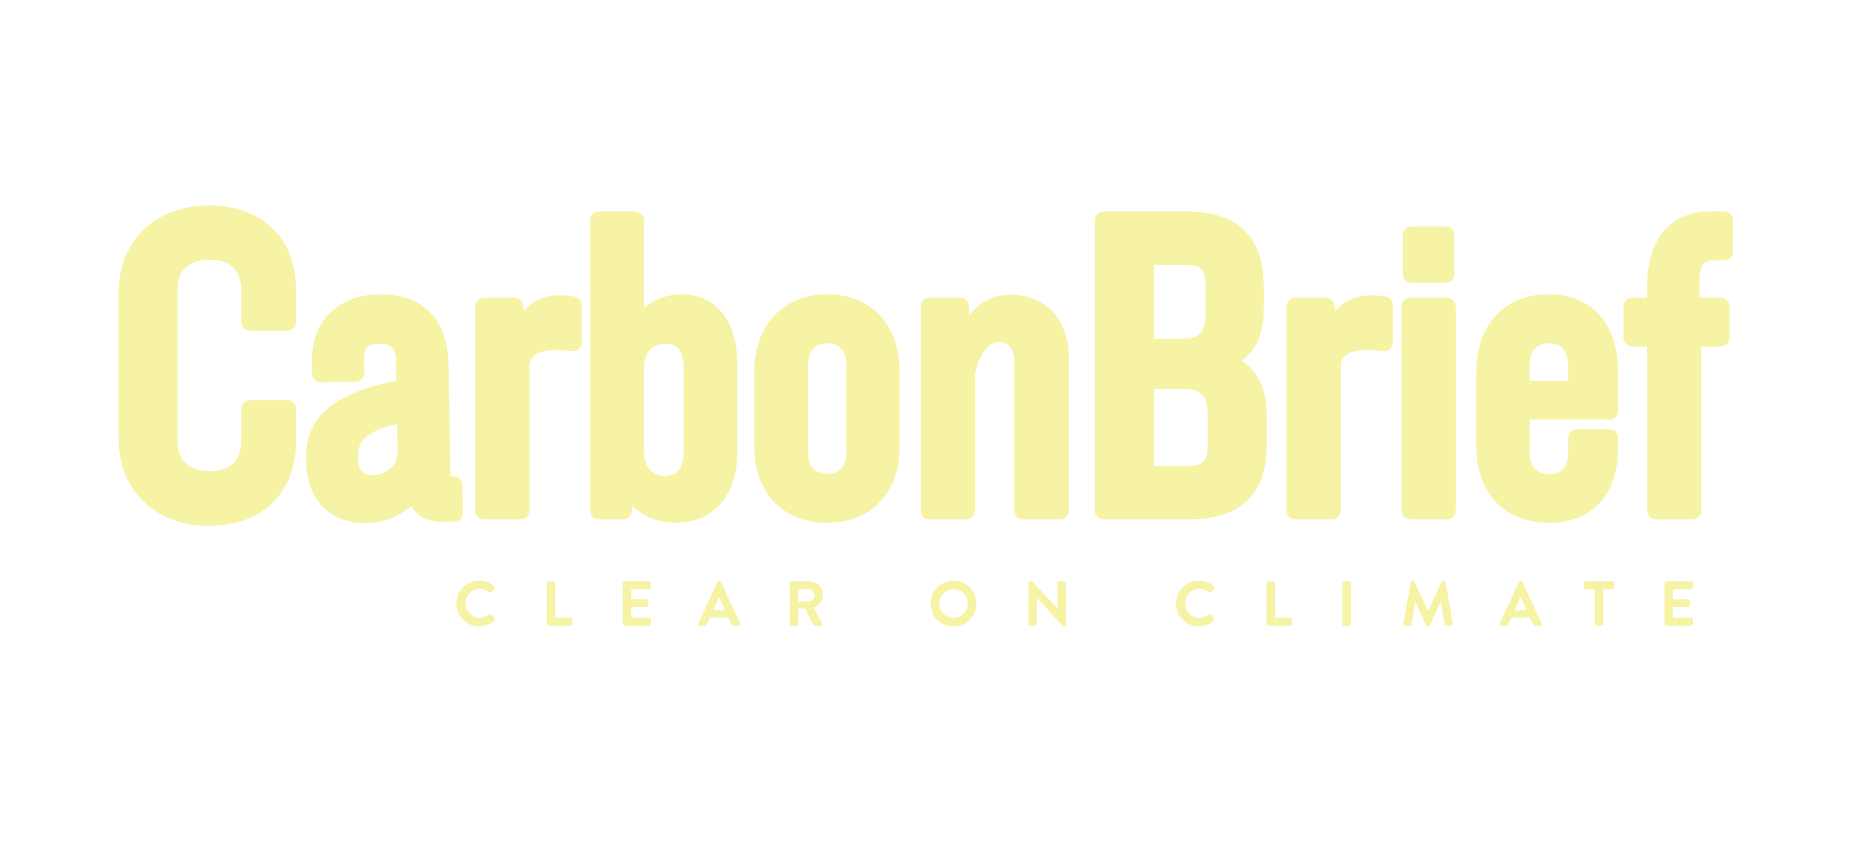 Carbon Brief